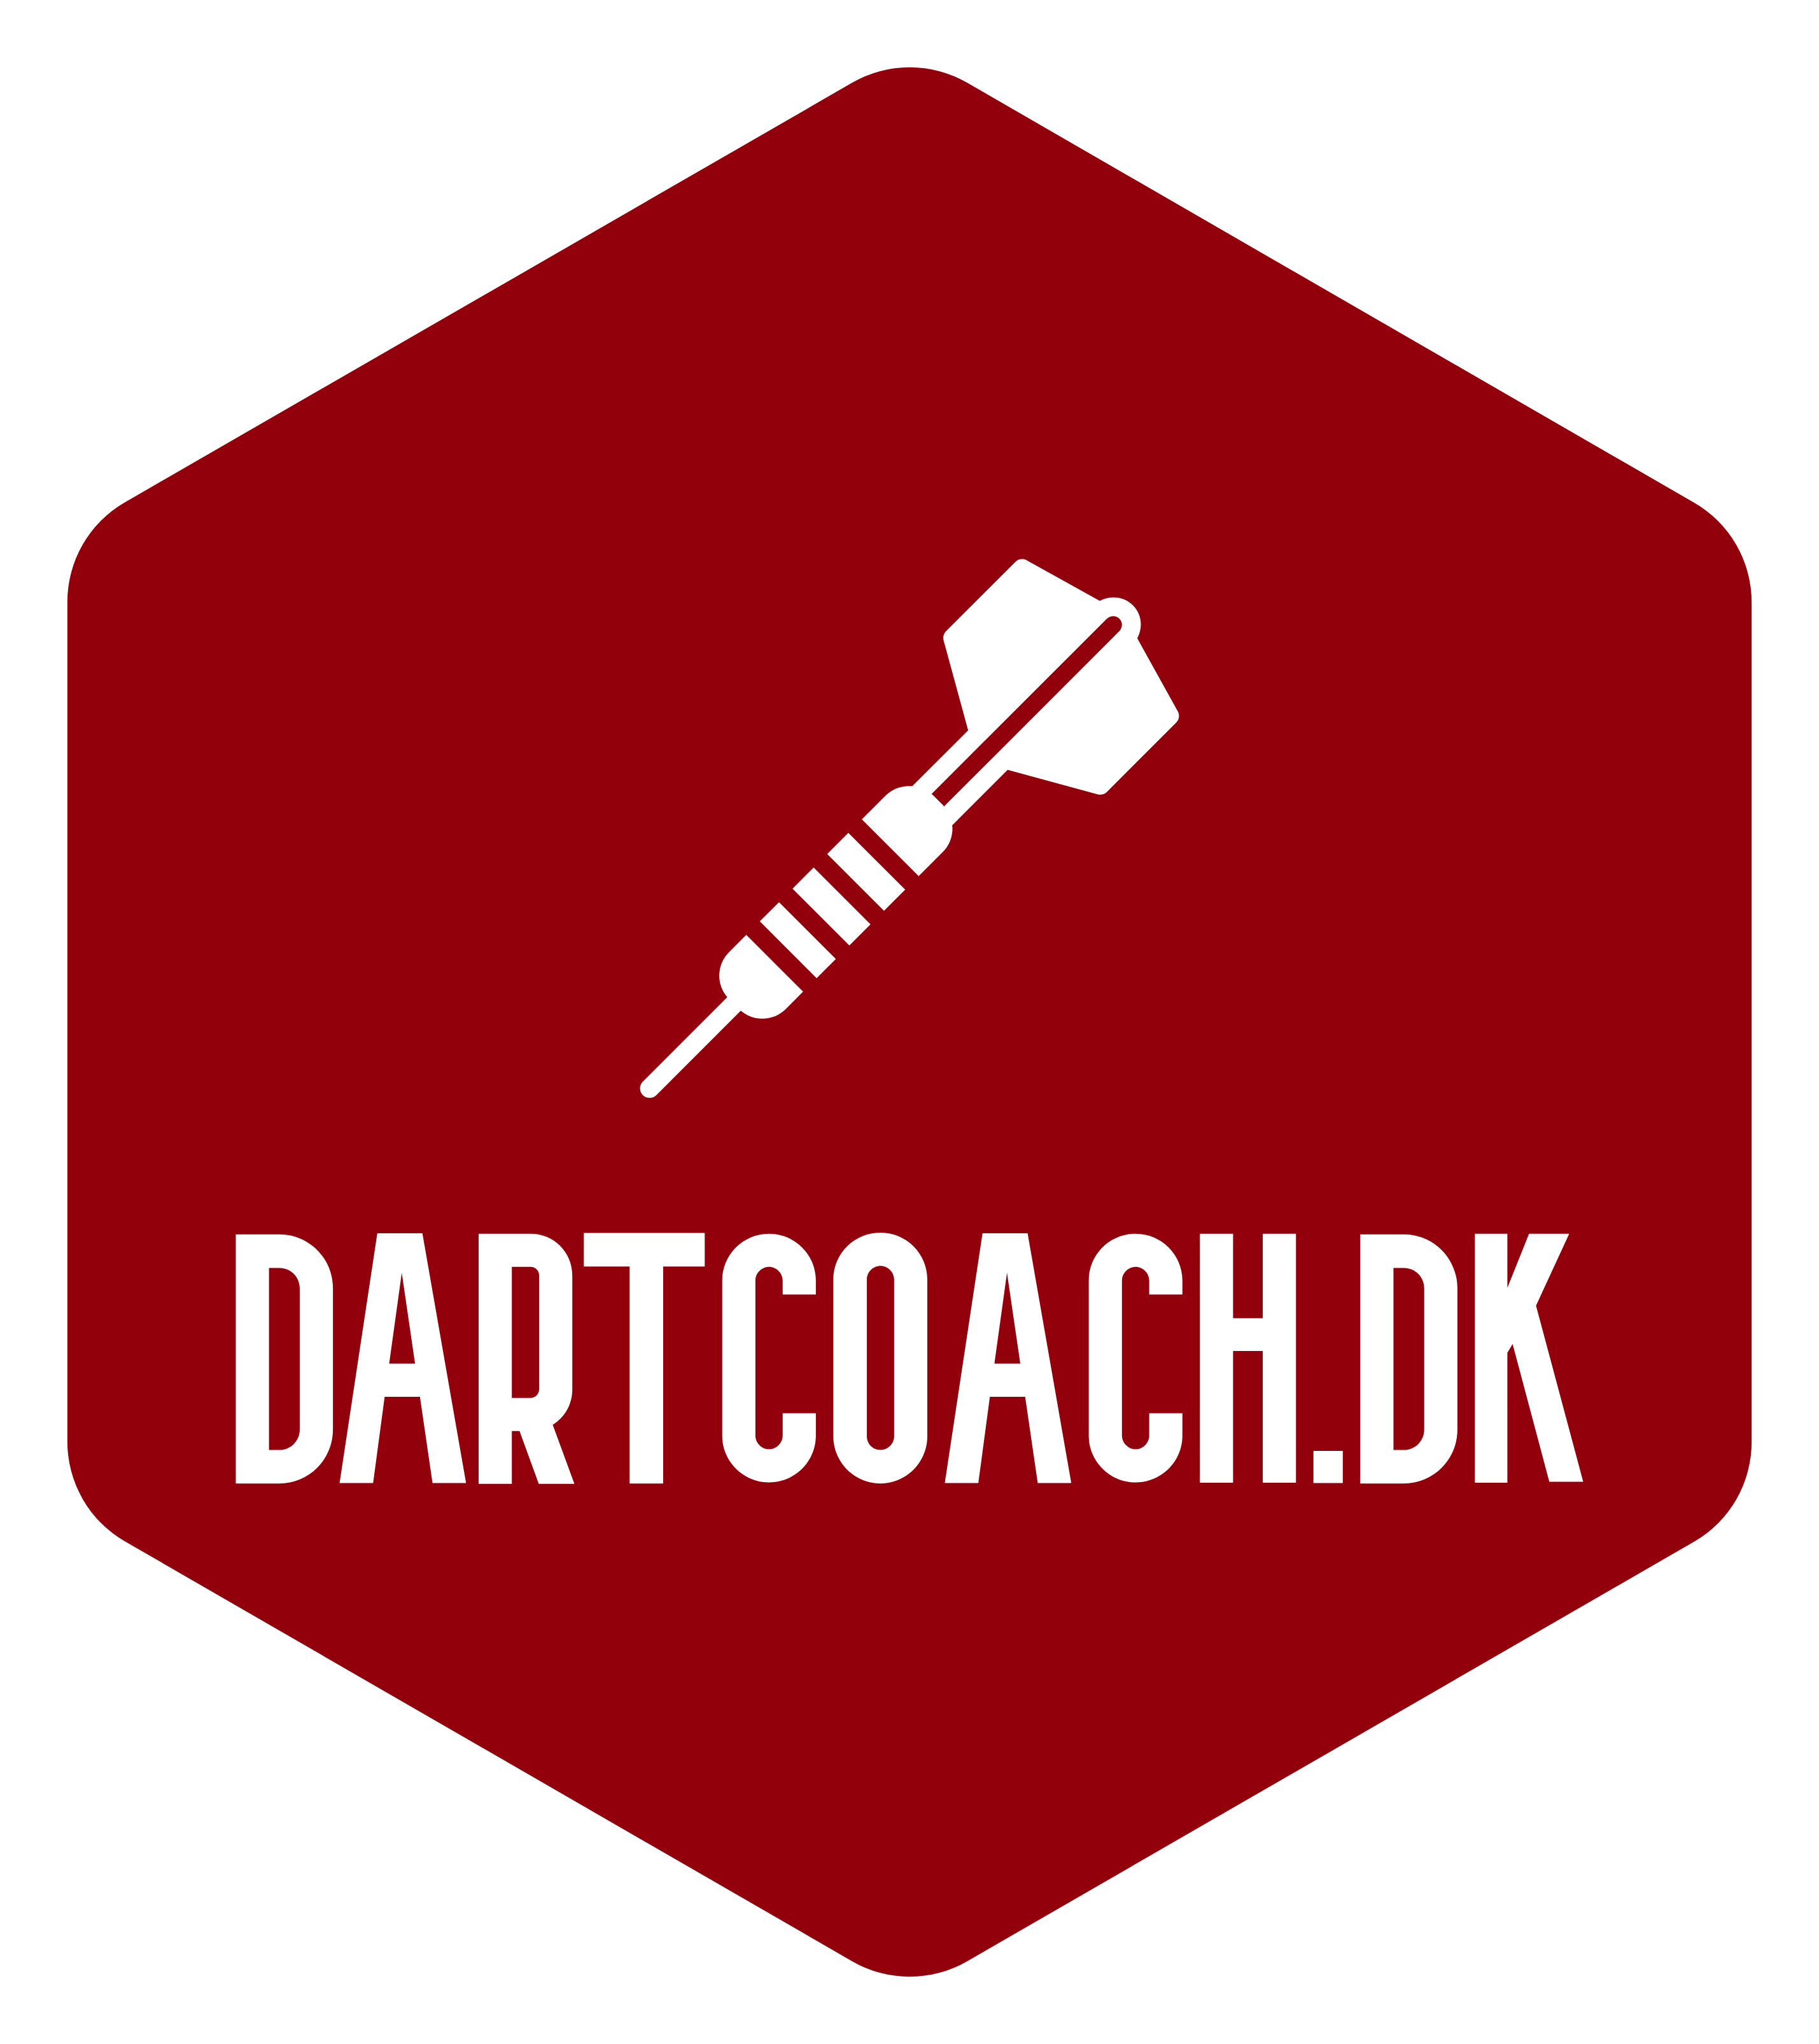 Dartcoach.dk